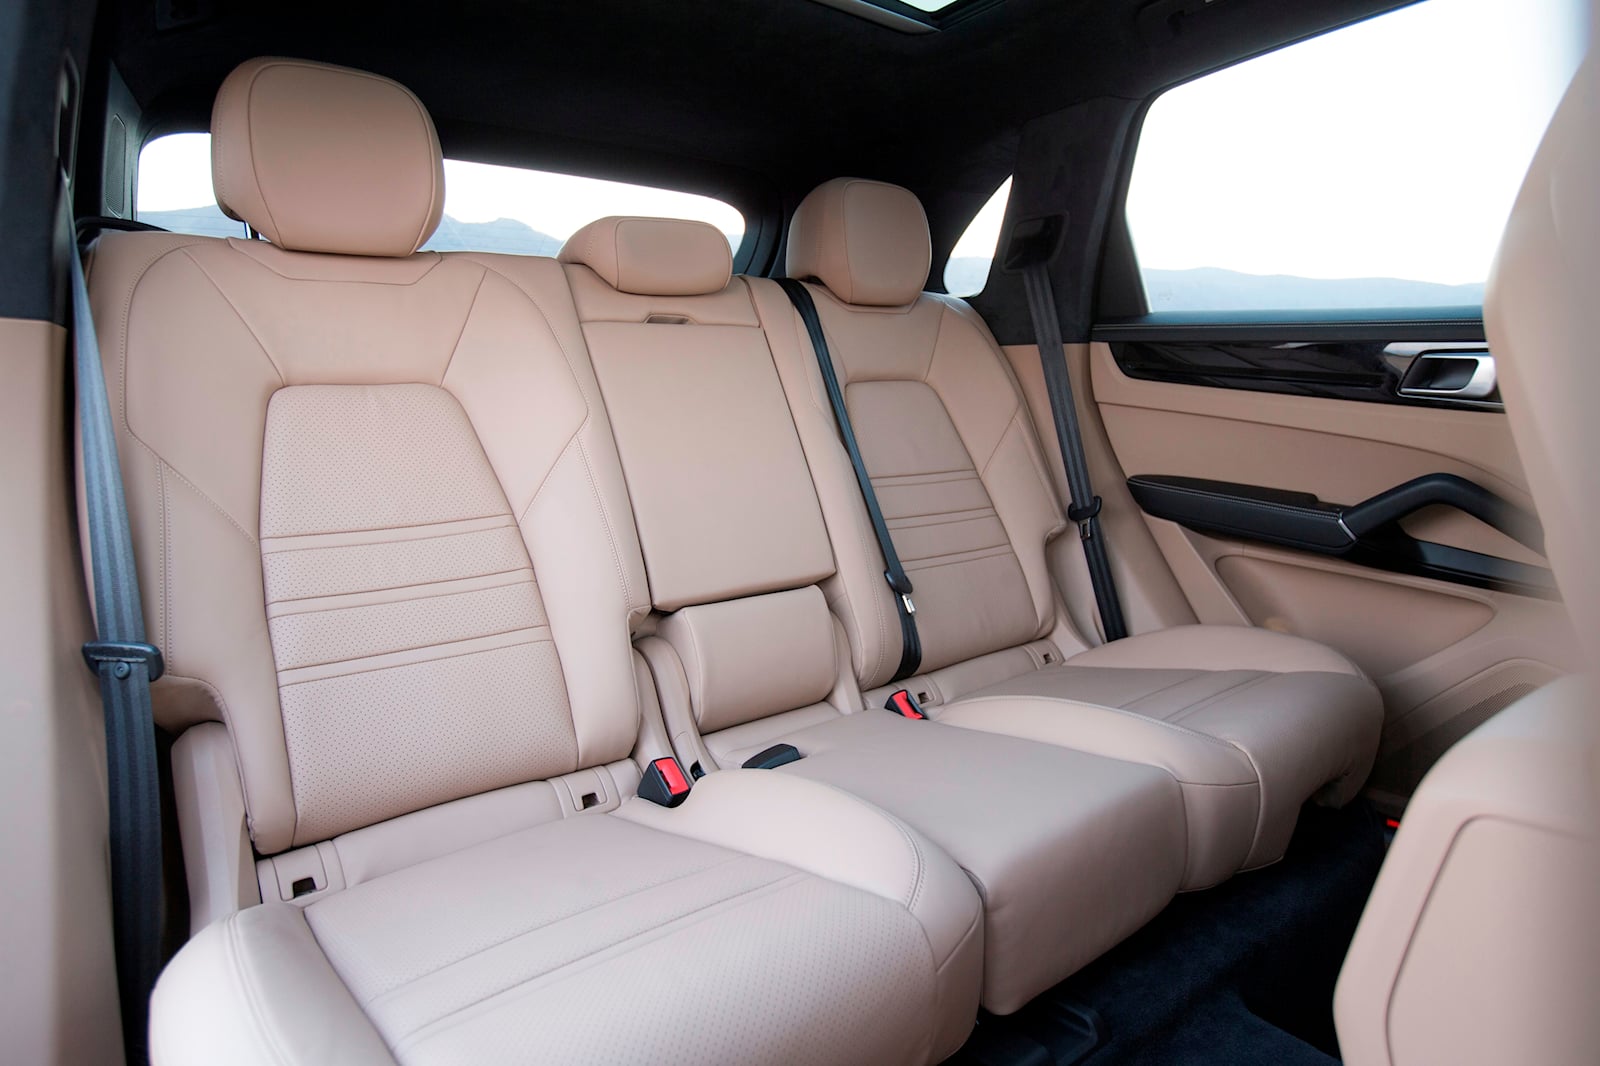 Porsche Cayenne S interior - Rear Seats